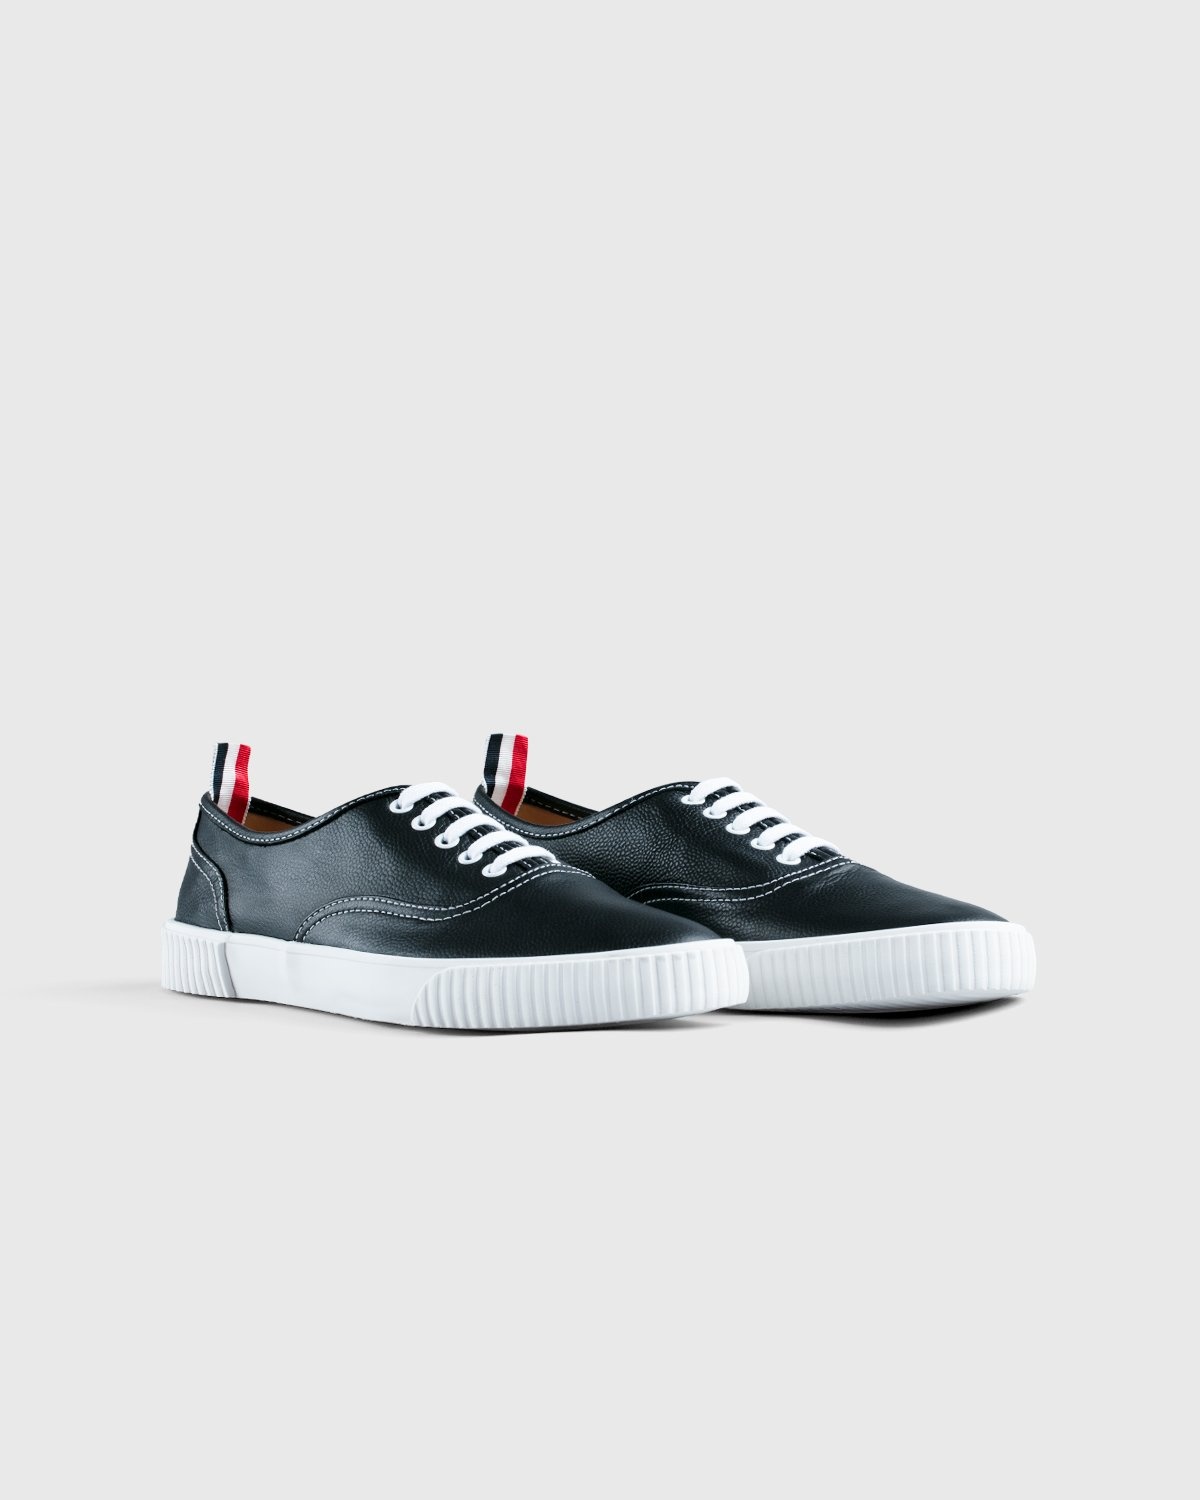 Thom Browne x Highsnobiety – Women's Heritage Sneaker Grey - Low Top Sneakers - Grey - Image 2